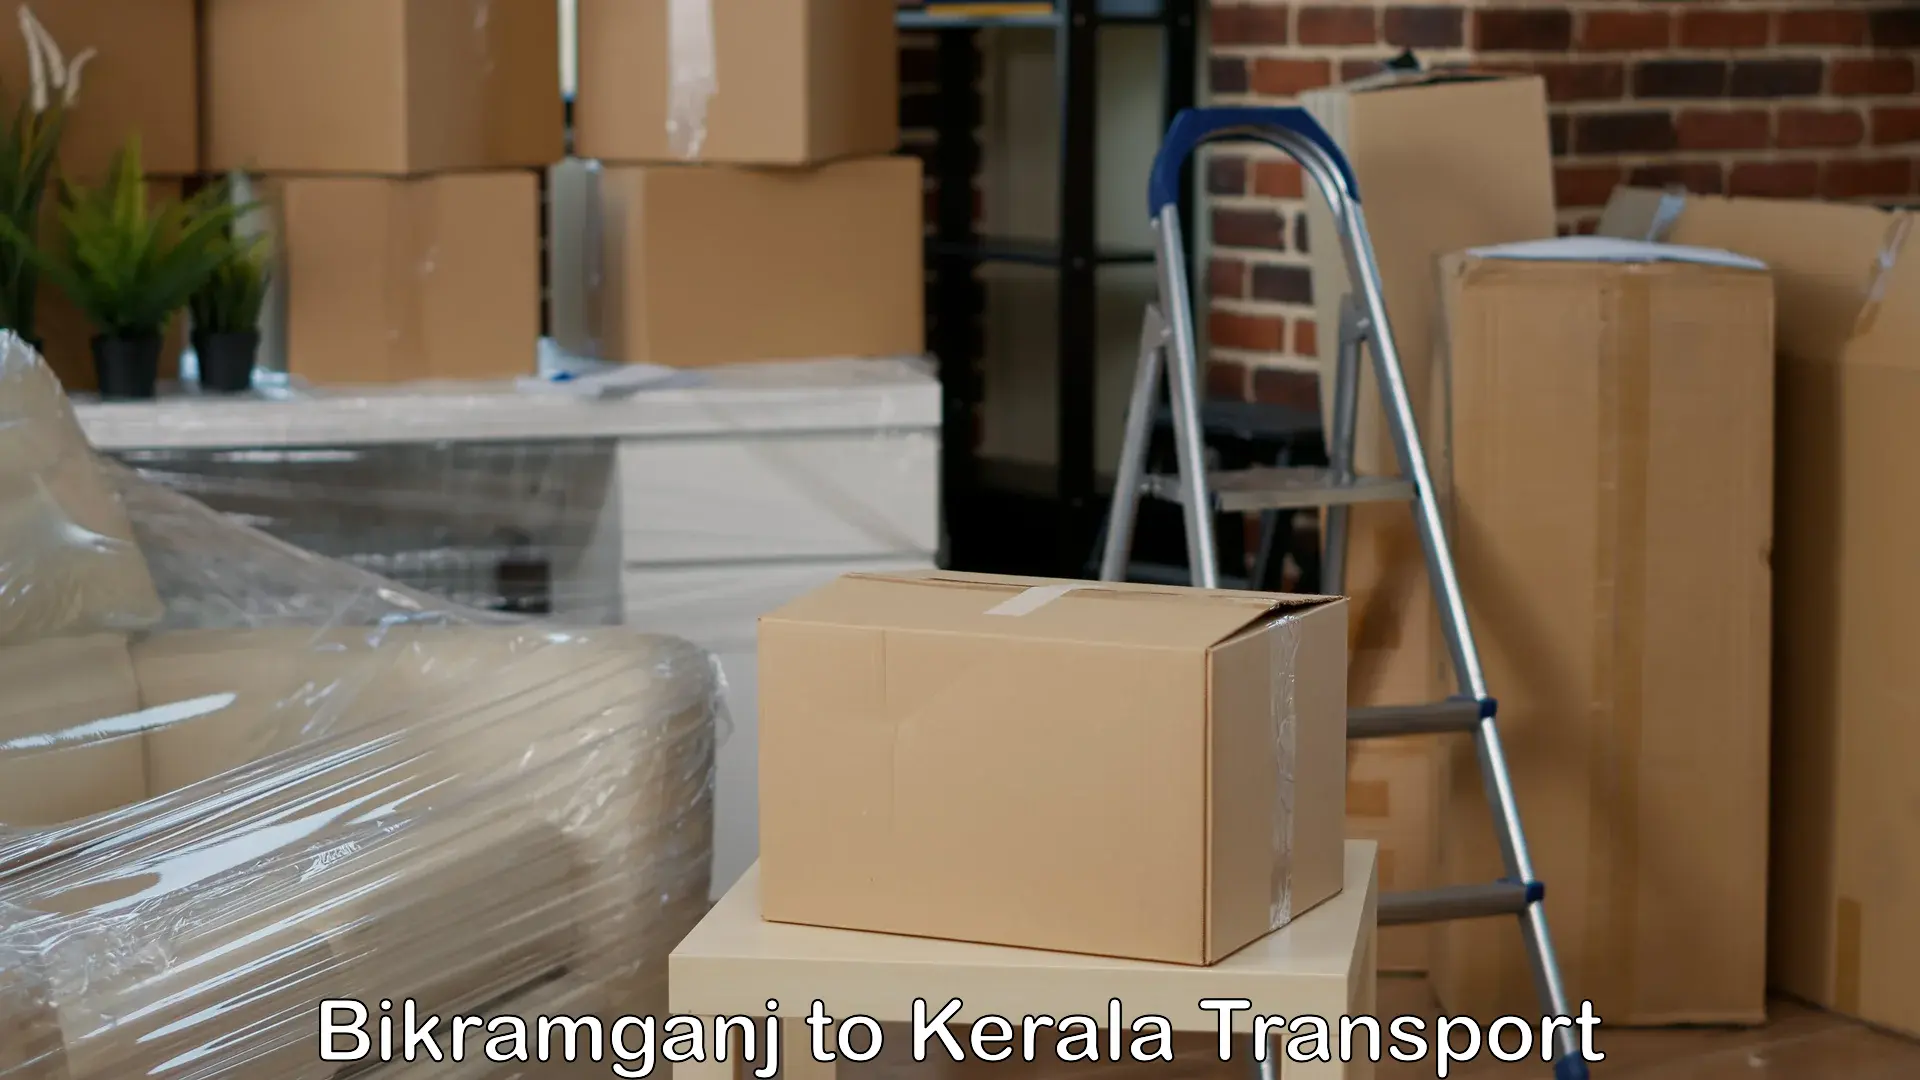 Intercity goods transport Bikramganj to Kottayam